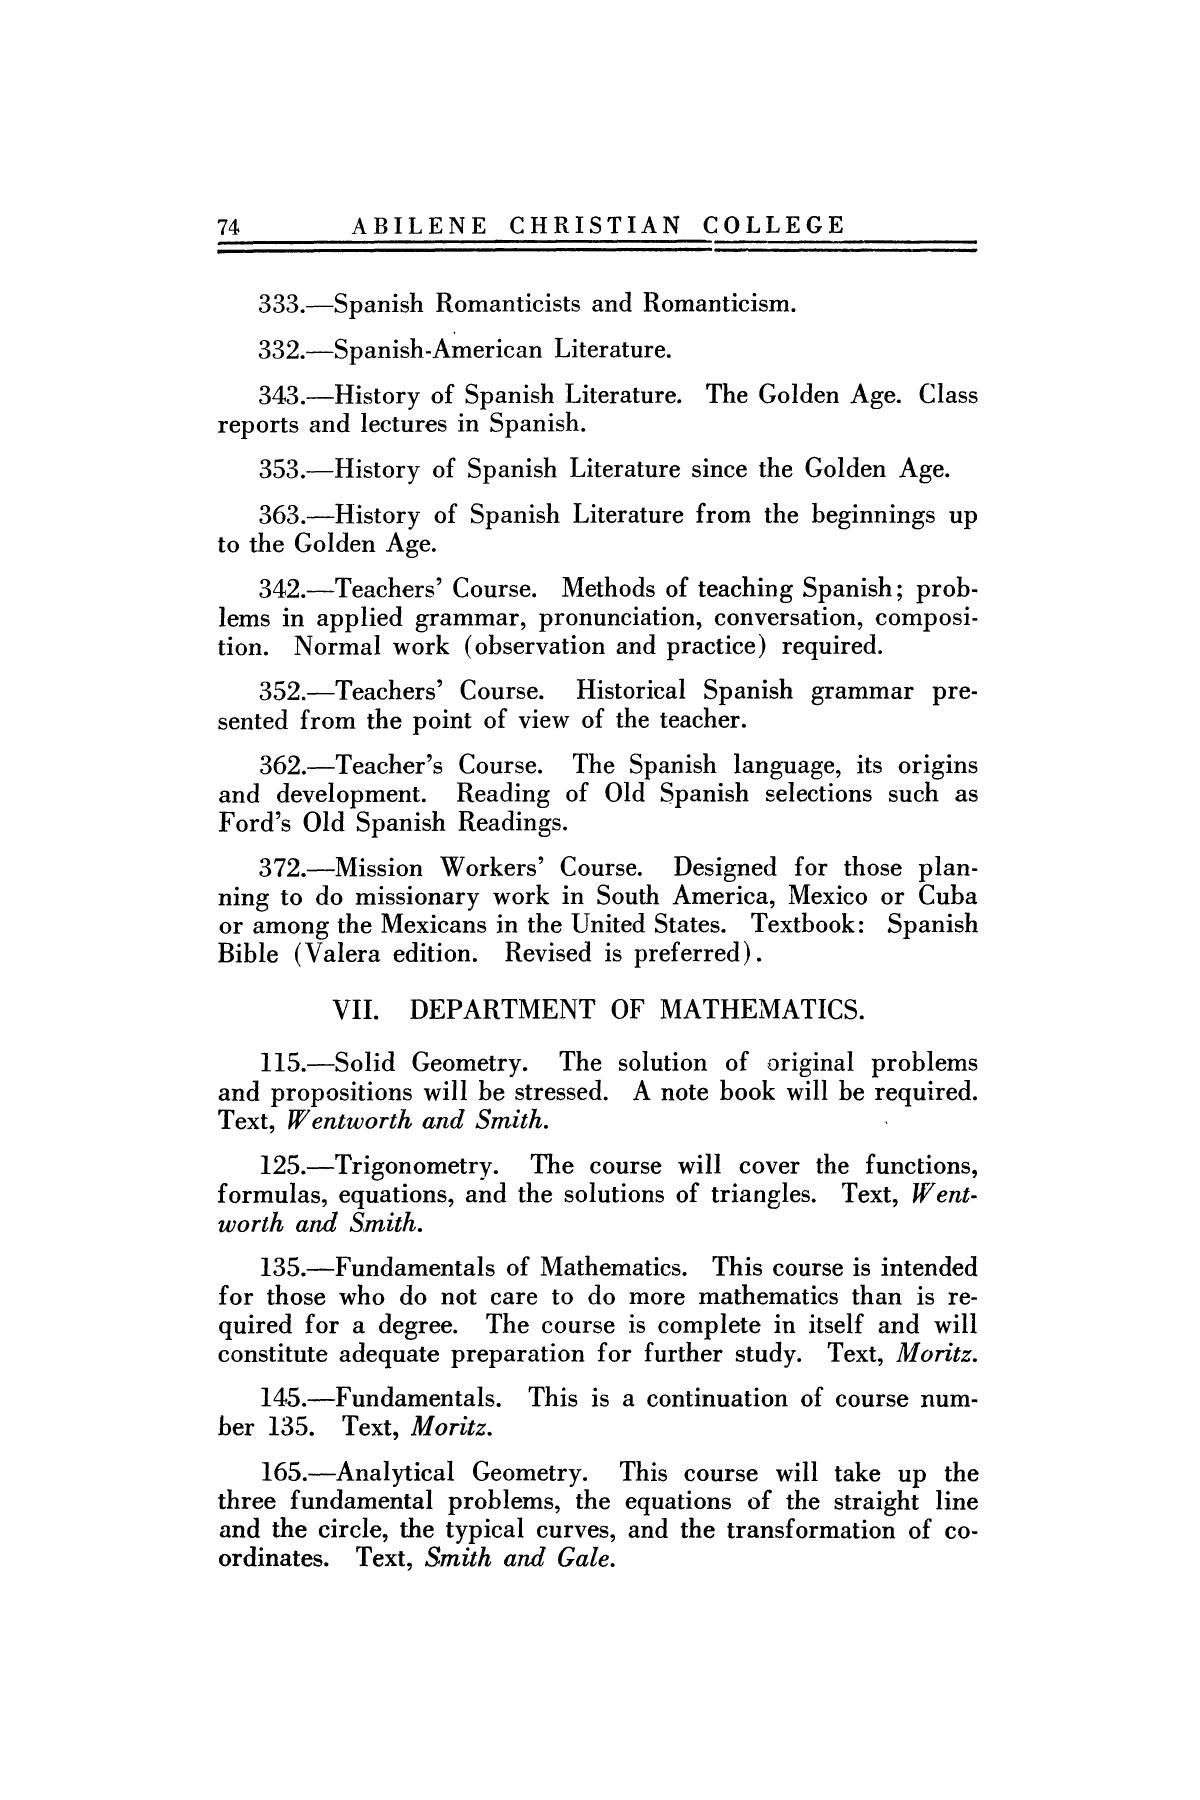 Catalog of Abilene Christian College, 1922-1923
                                                
                                                    74
                                                